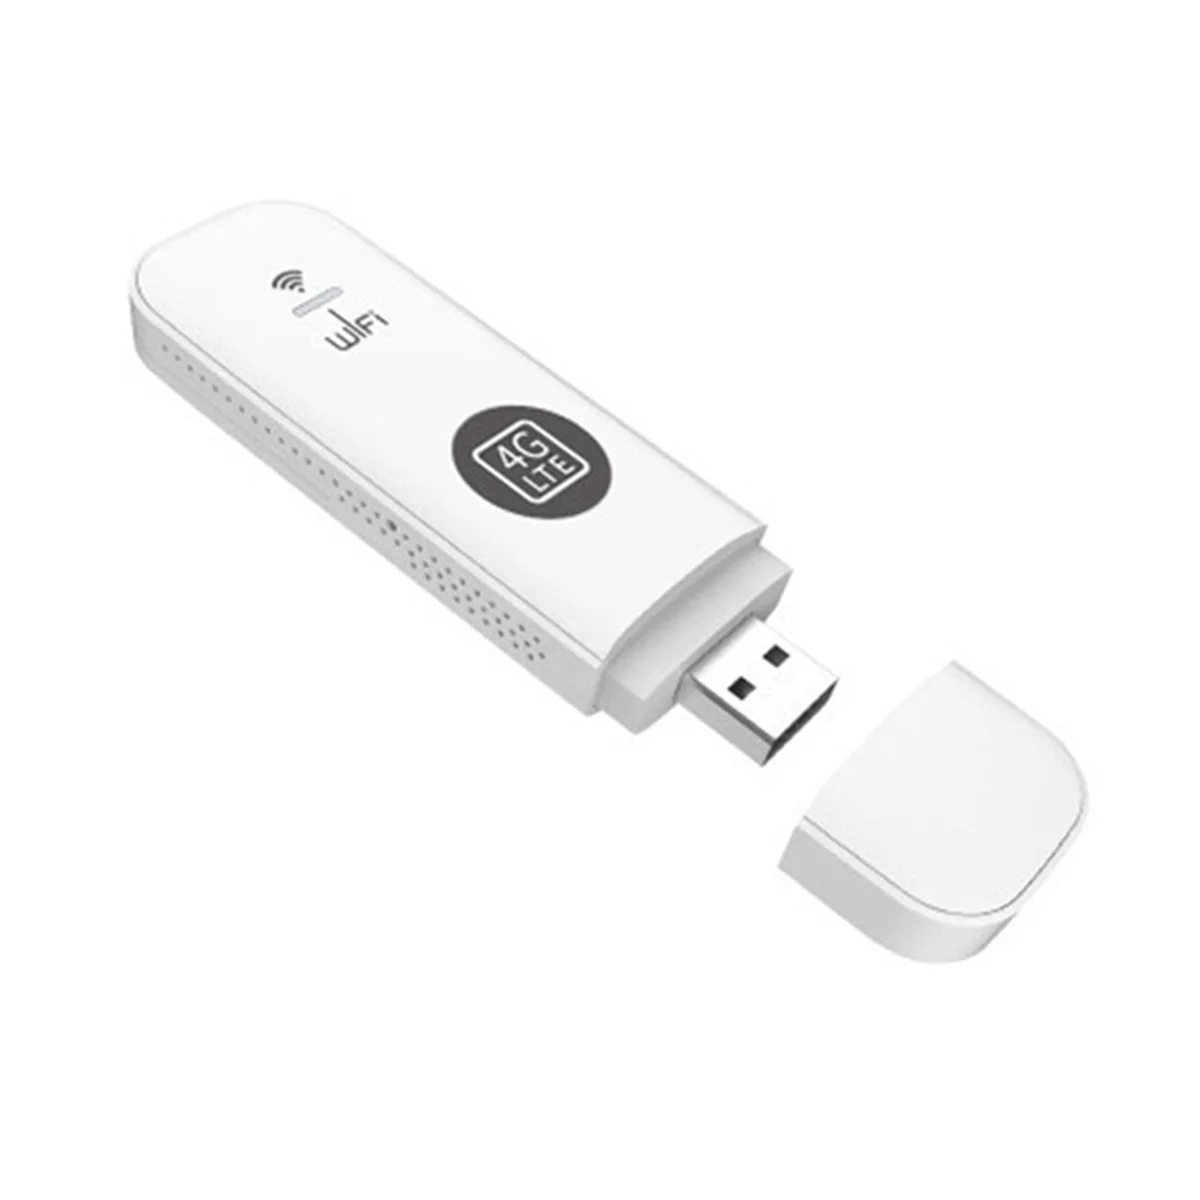 

4G USB Wi-Fi модем маршрутизатор со слотом для SIM-карты 4G LTE автомобильный беспроводной Wi-Fi роутер с поддержкой B28 Европейский диапазон-белый